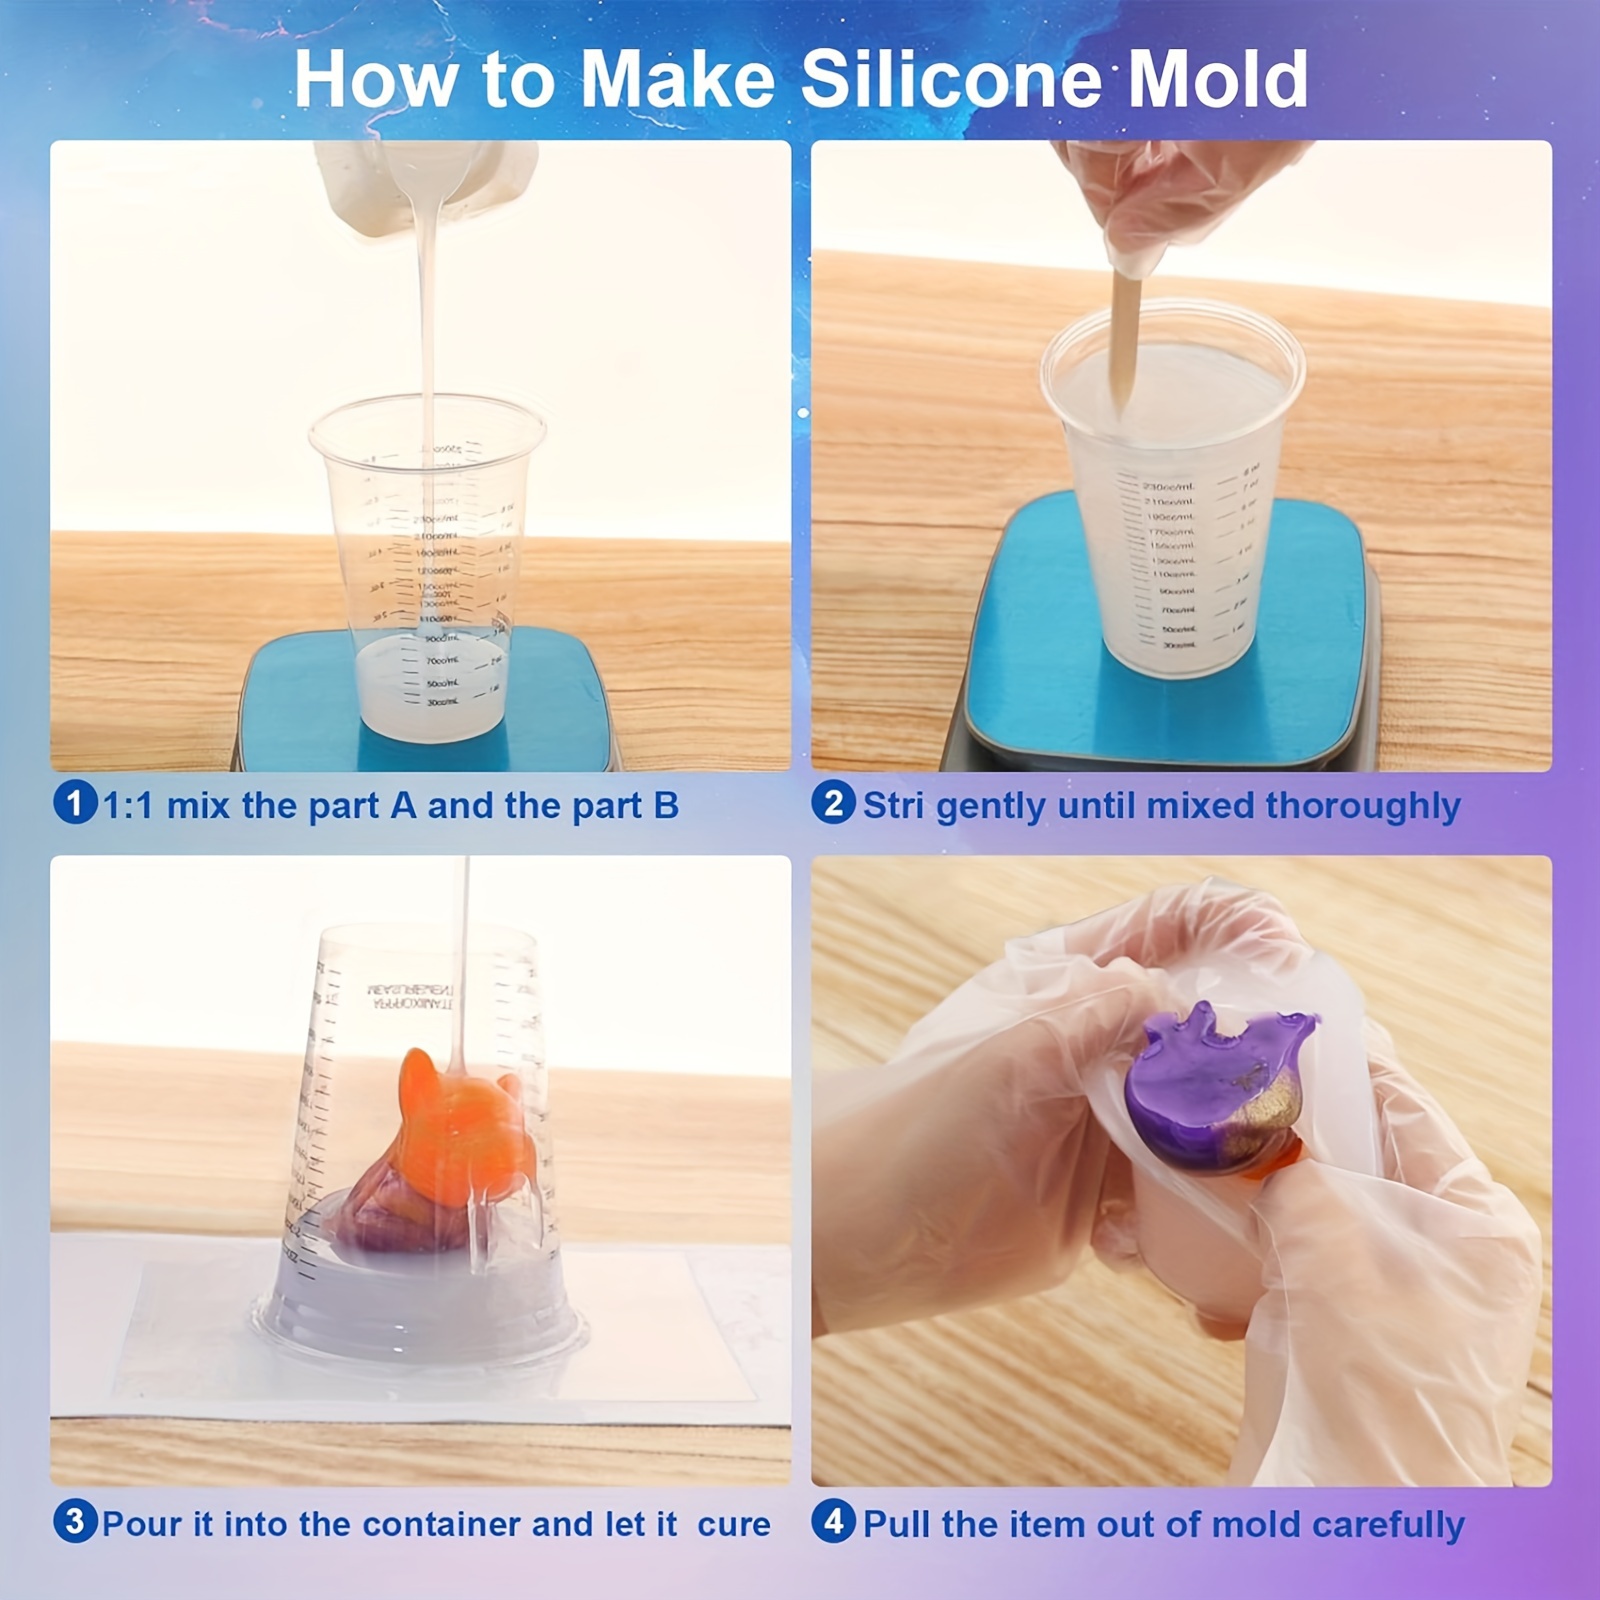 BBDINO Super Elastic Silicone Mold Making Rubber 1 Gallon Kit Platinum –  BBDINO Direct